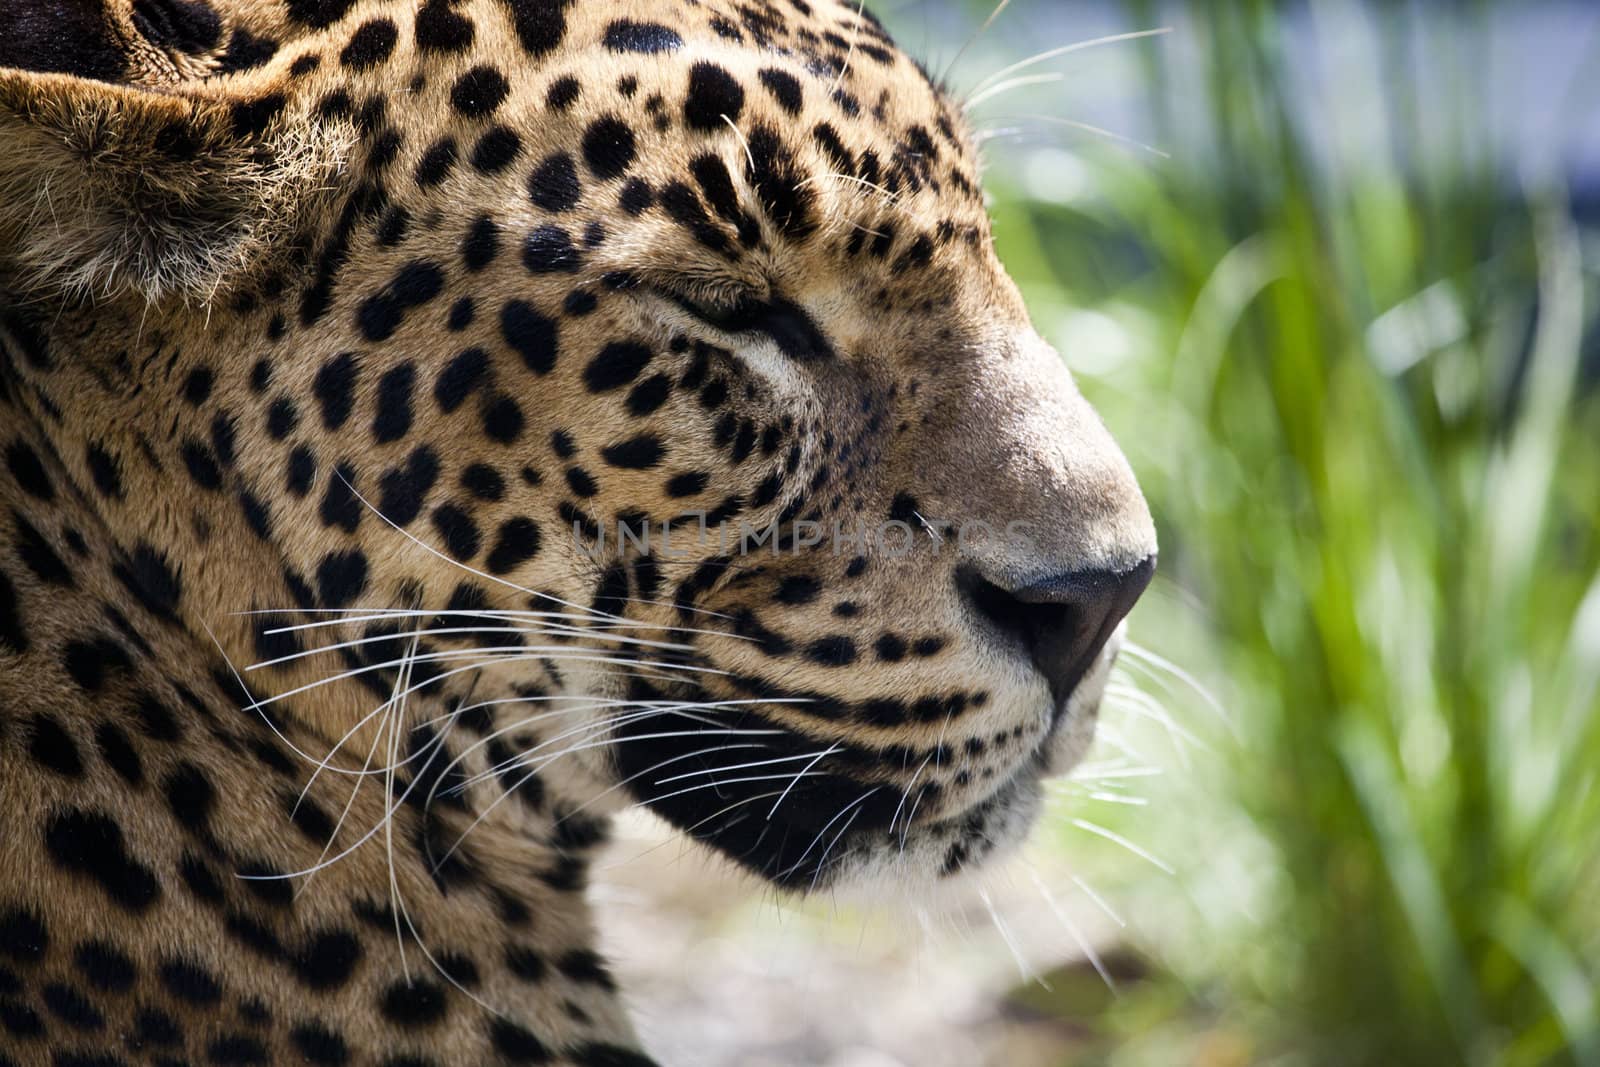 close-up of a beautiful Panther